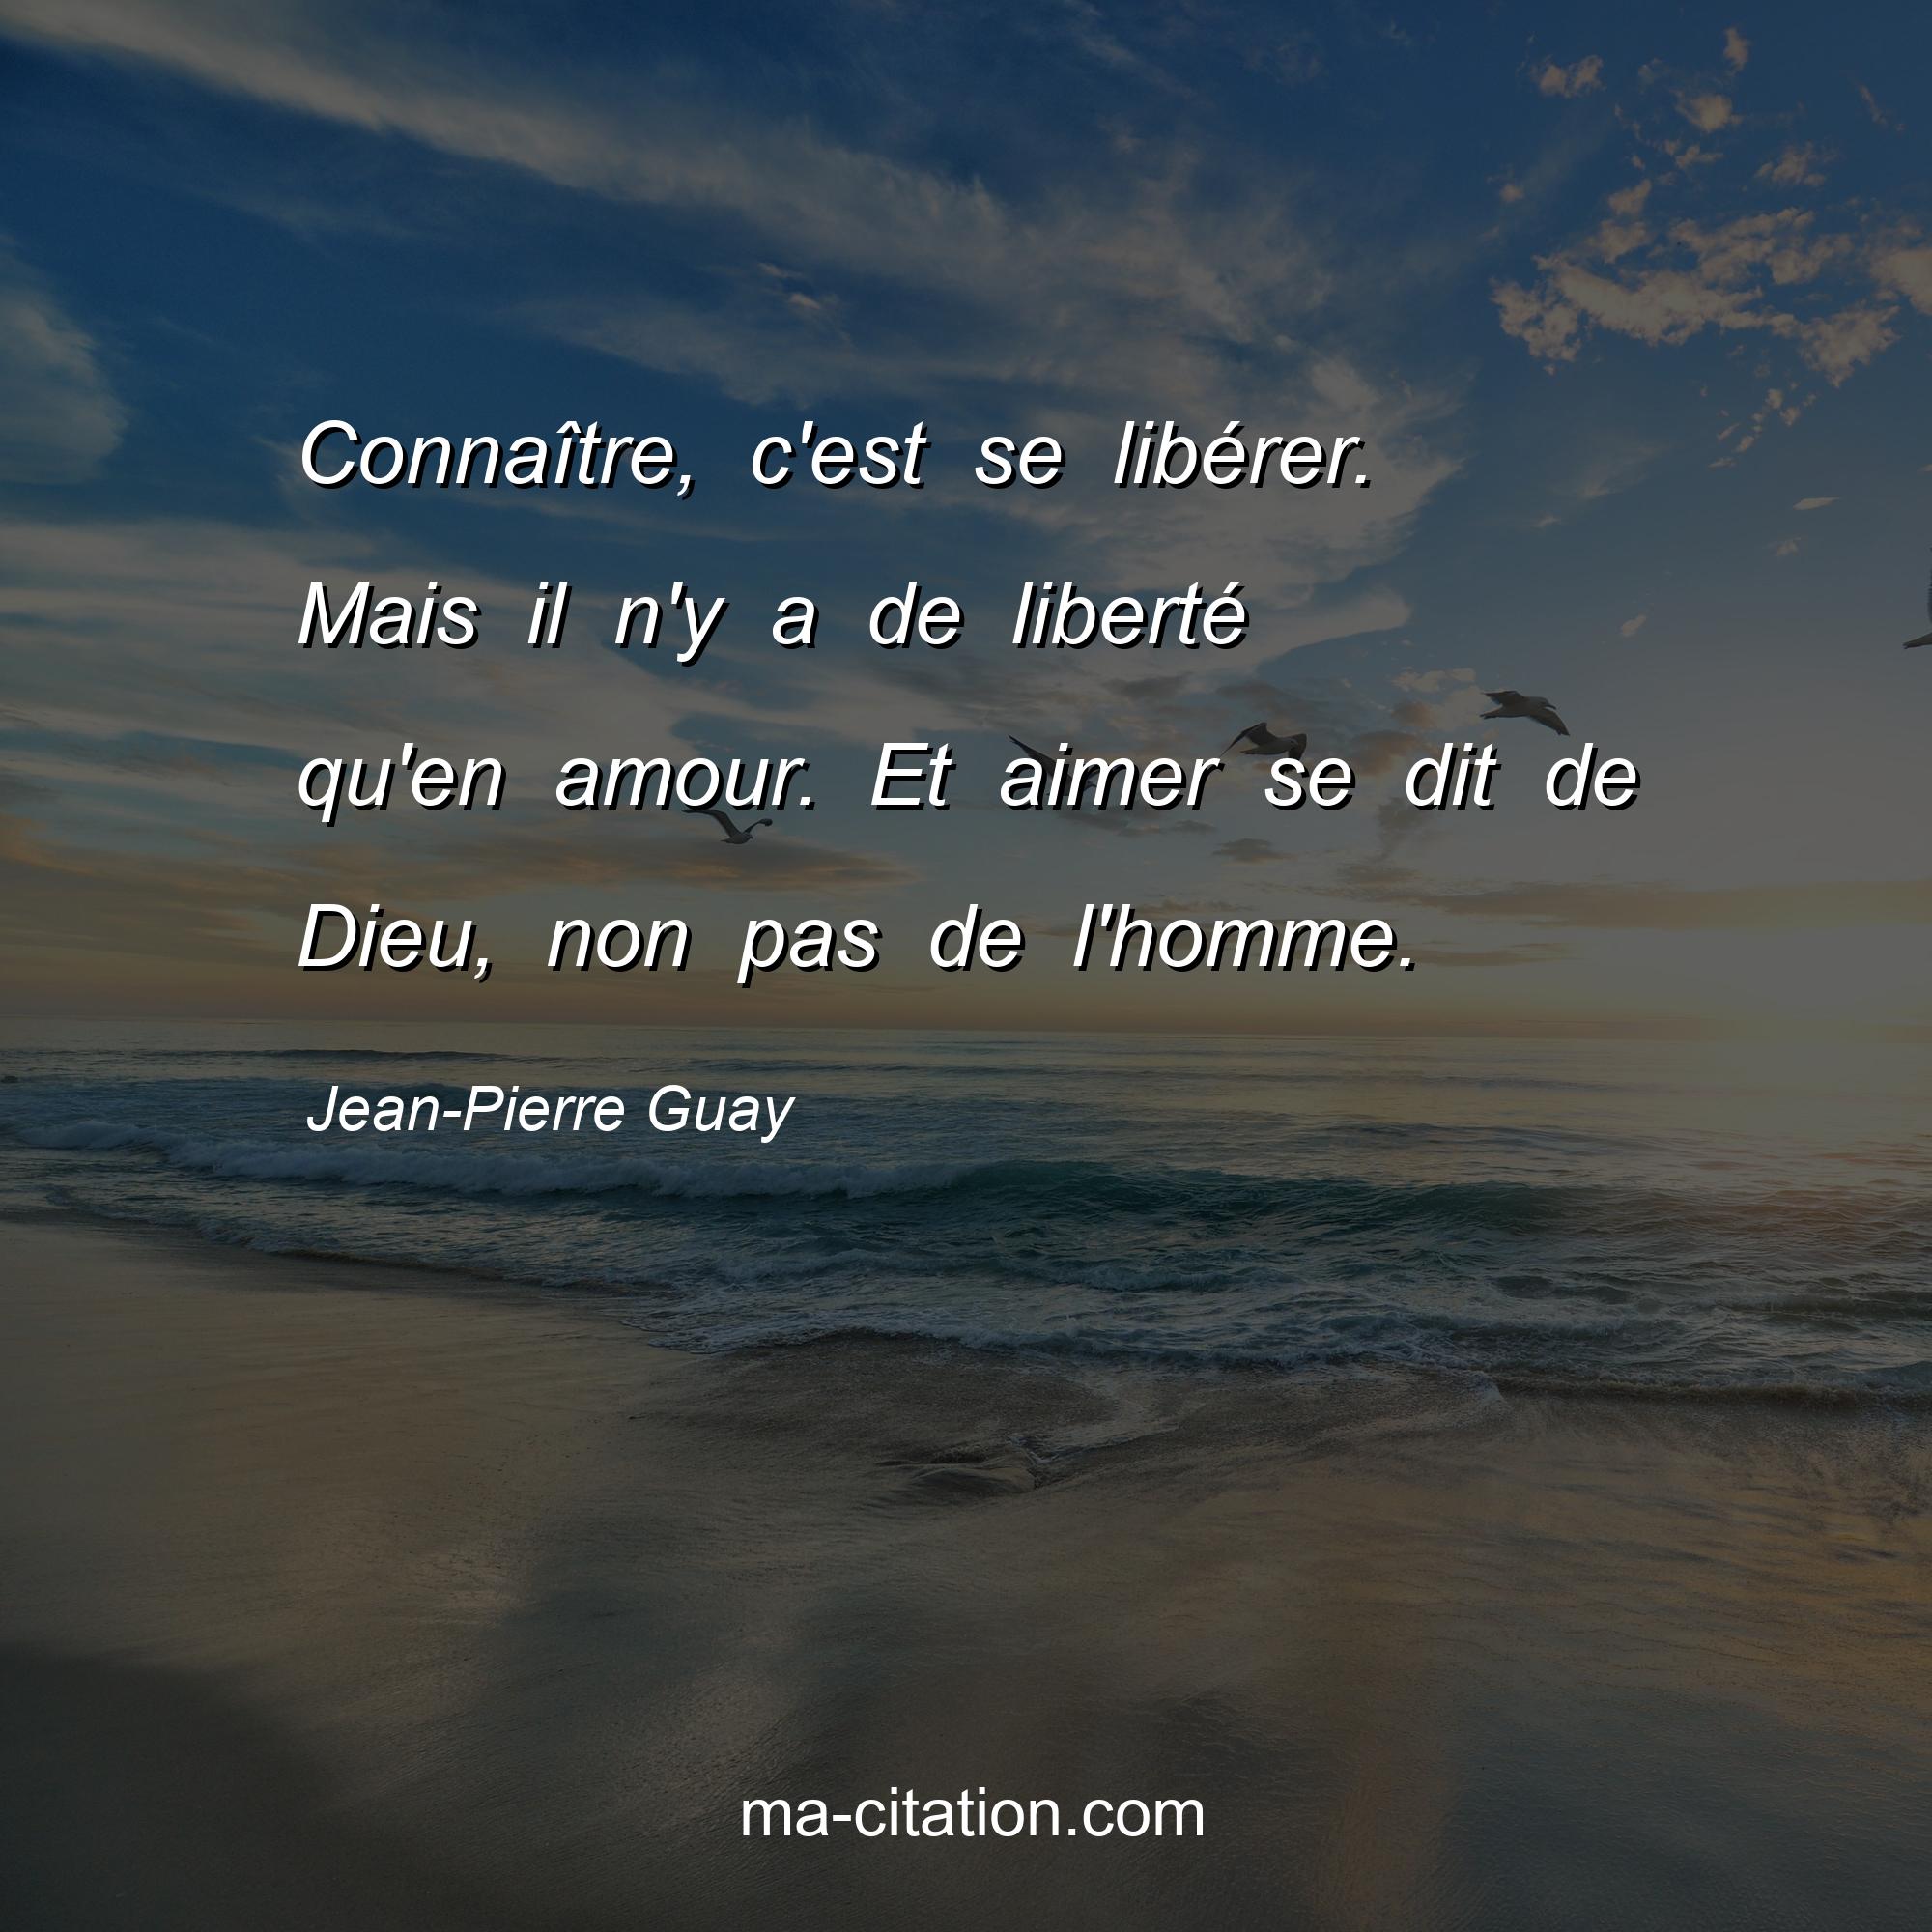 Jean-Pierre Guay : Connaître, c'est se libérer. Mais il n'y a de liberté qu'en amour. Et aimer se dit de Dieu, non pas de l'homme.